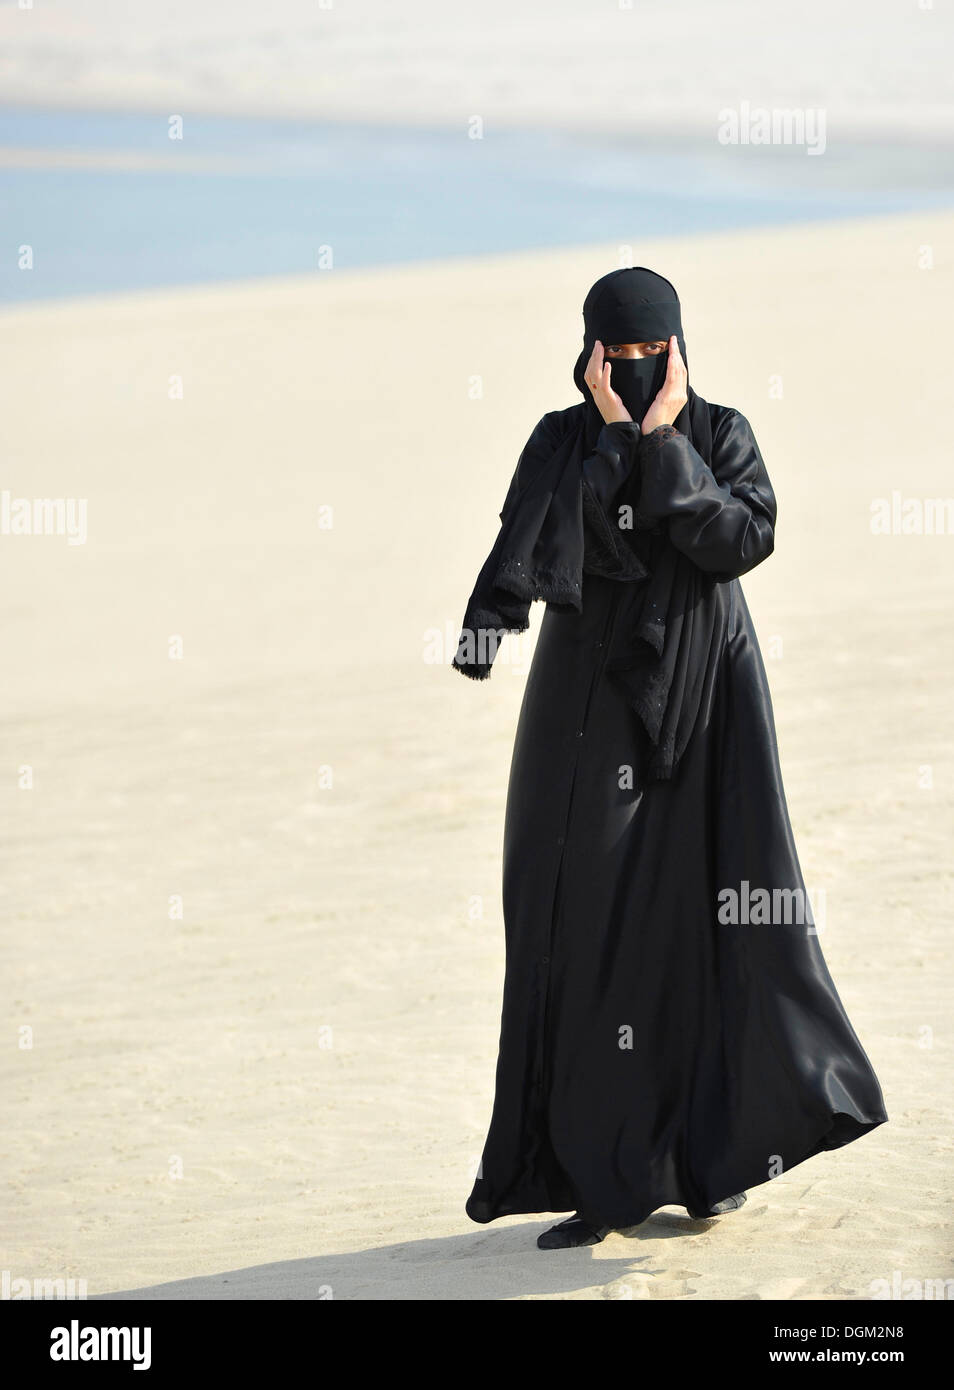 https://c8.alamy.com/compes/dgm2n8/mujer-arabe-en-vestimentas-tradicionales-con-velo-y-abayah-khor-al-udeid-playa-khor-el-deid-mar-interior-el-milagro-del-desierto-de-qatar-dgm2n8.jpg